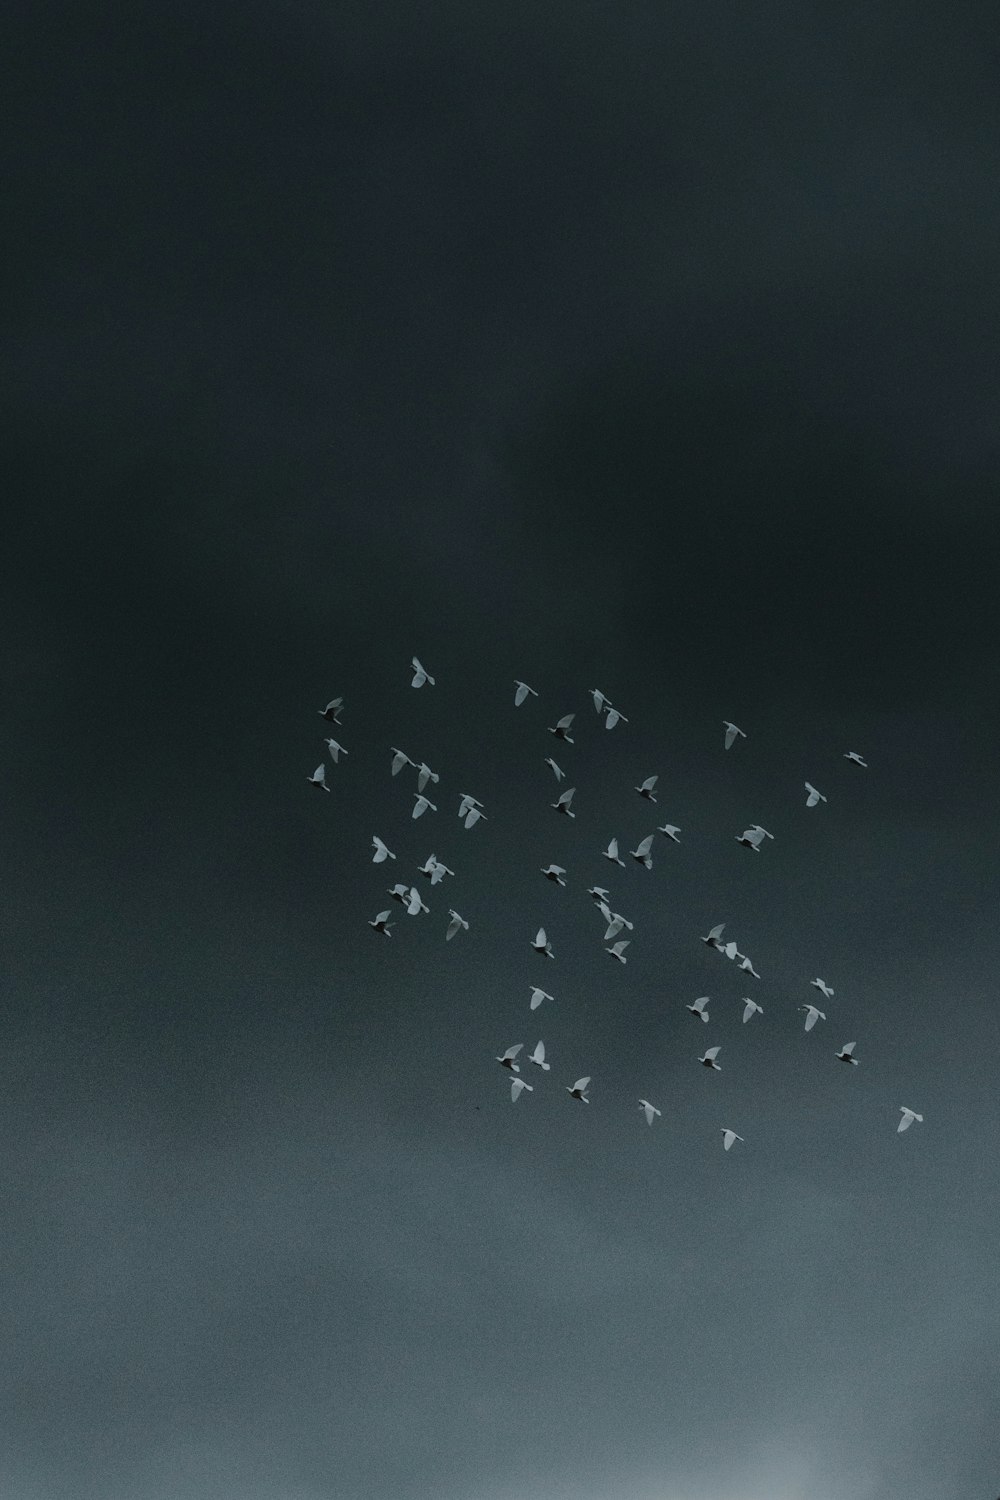 flock of birds flying under dark sky